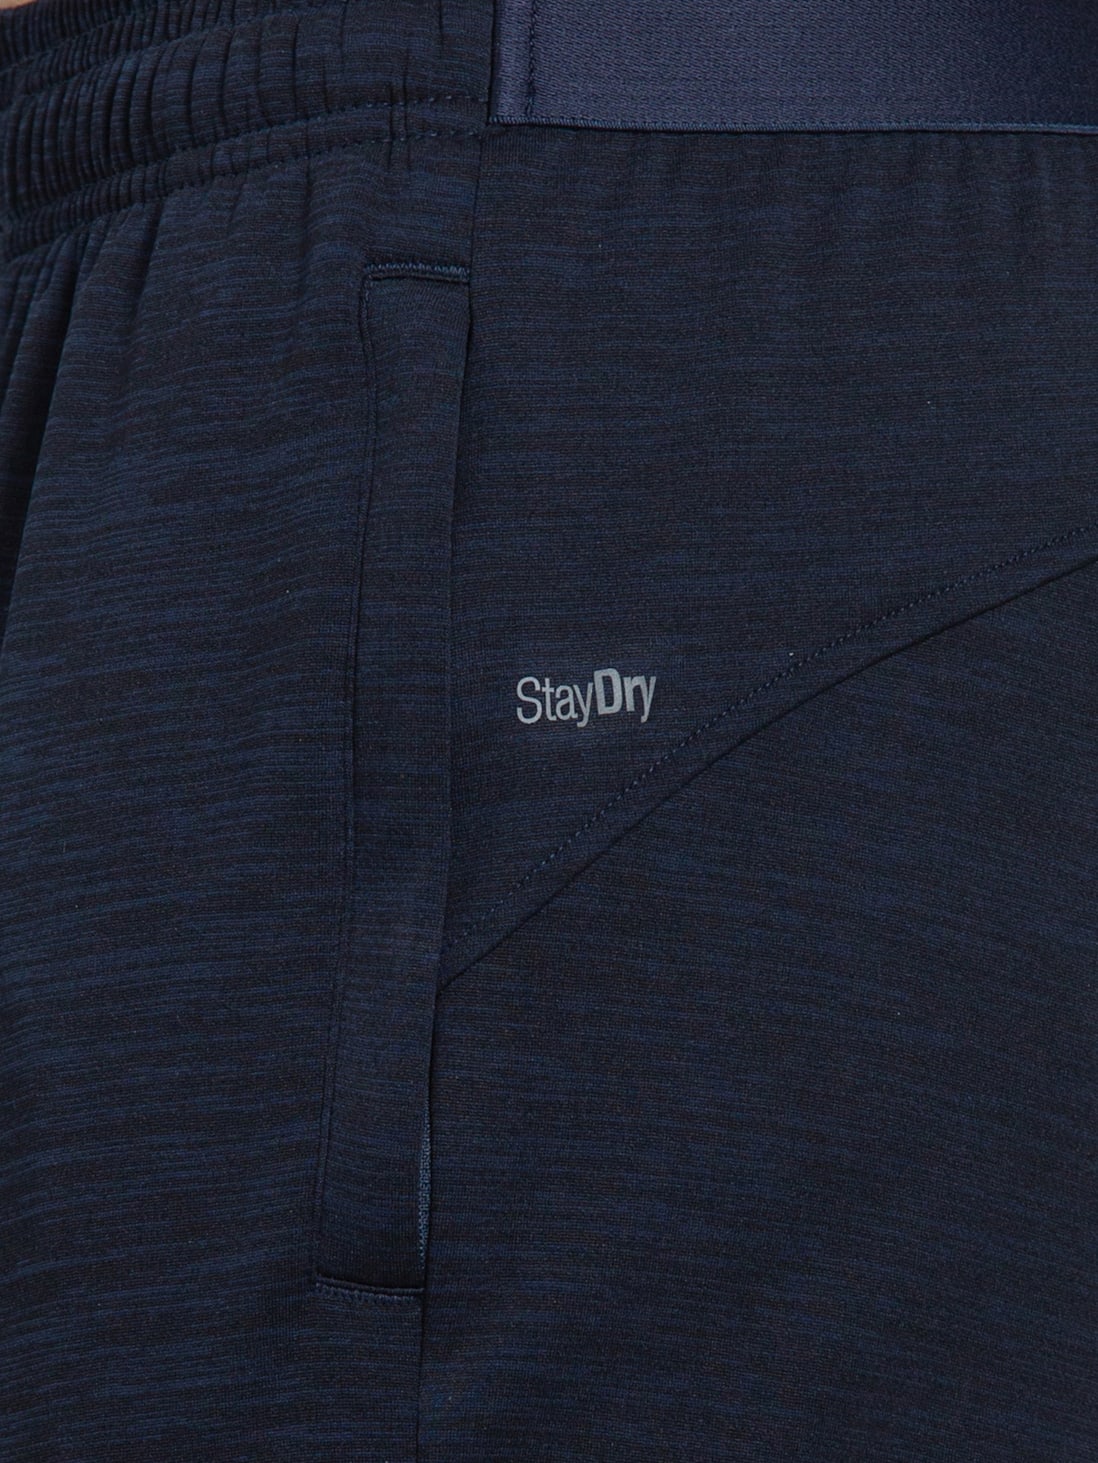 Buy Men's Lightweight Microfiber Slim Fit Trackpants with Zipper ...